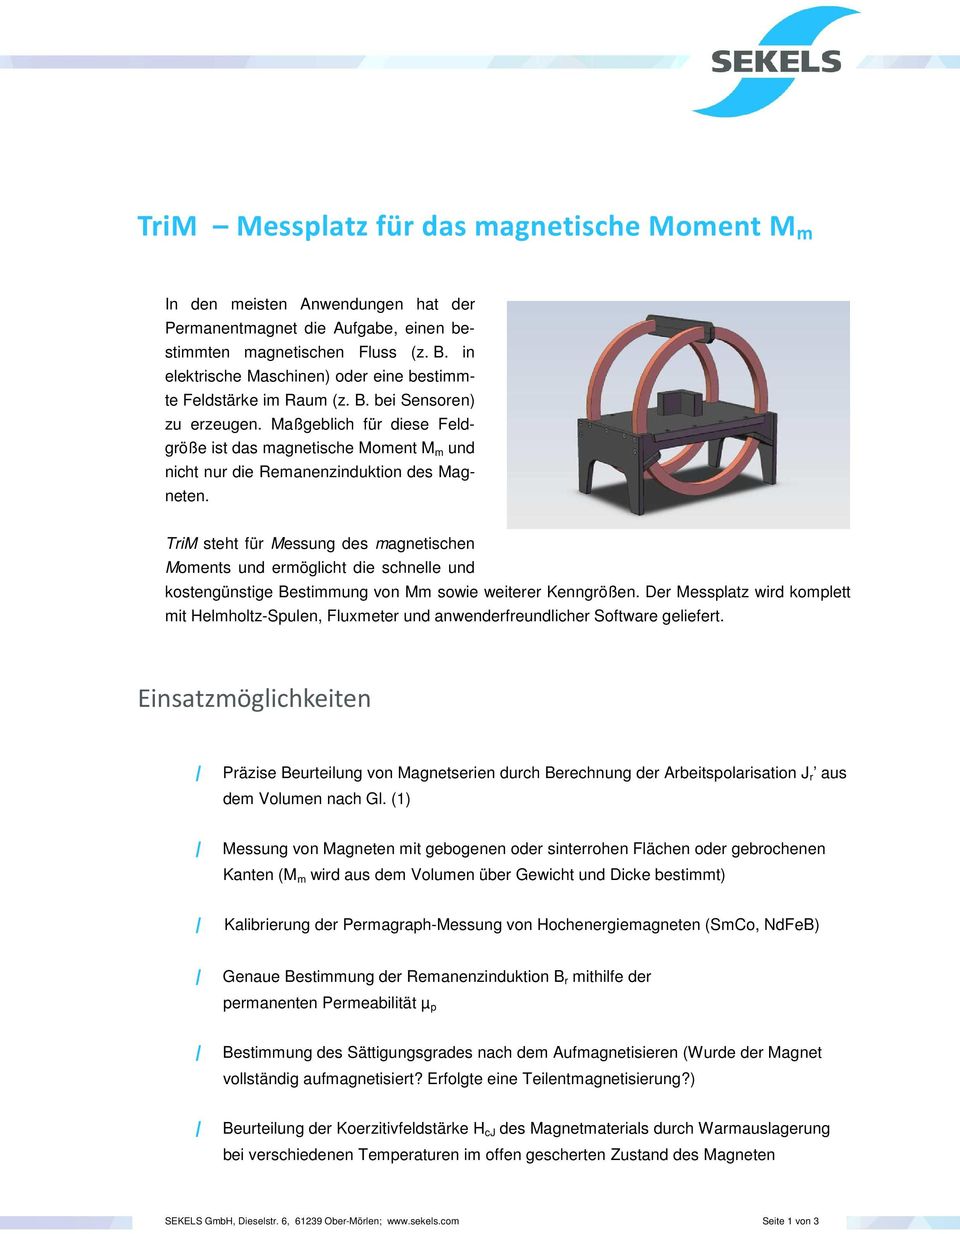 Maßgeblich für diese Feldgröße ist das magnetische Moment M m und nicht nur die Remanenzinduktion des Magneten.